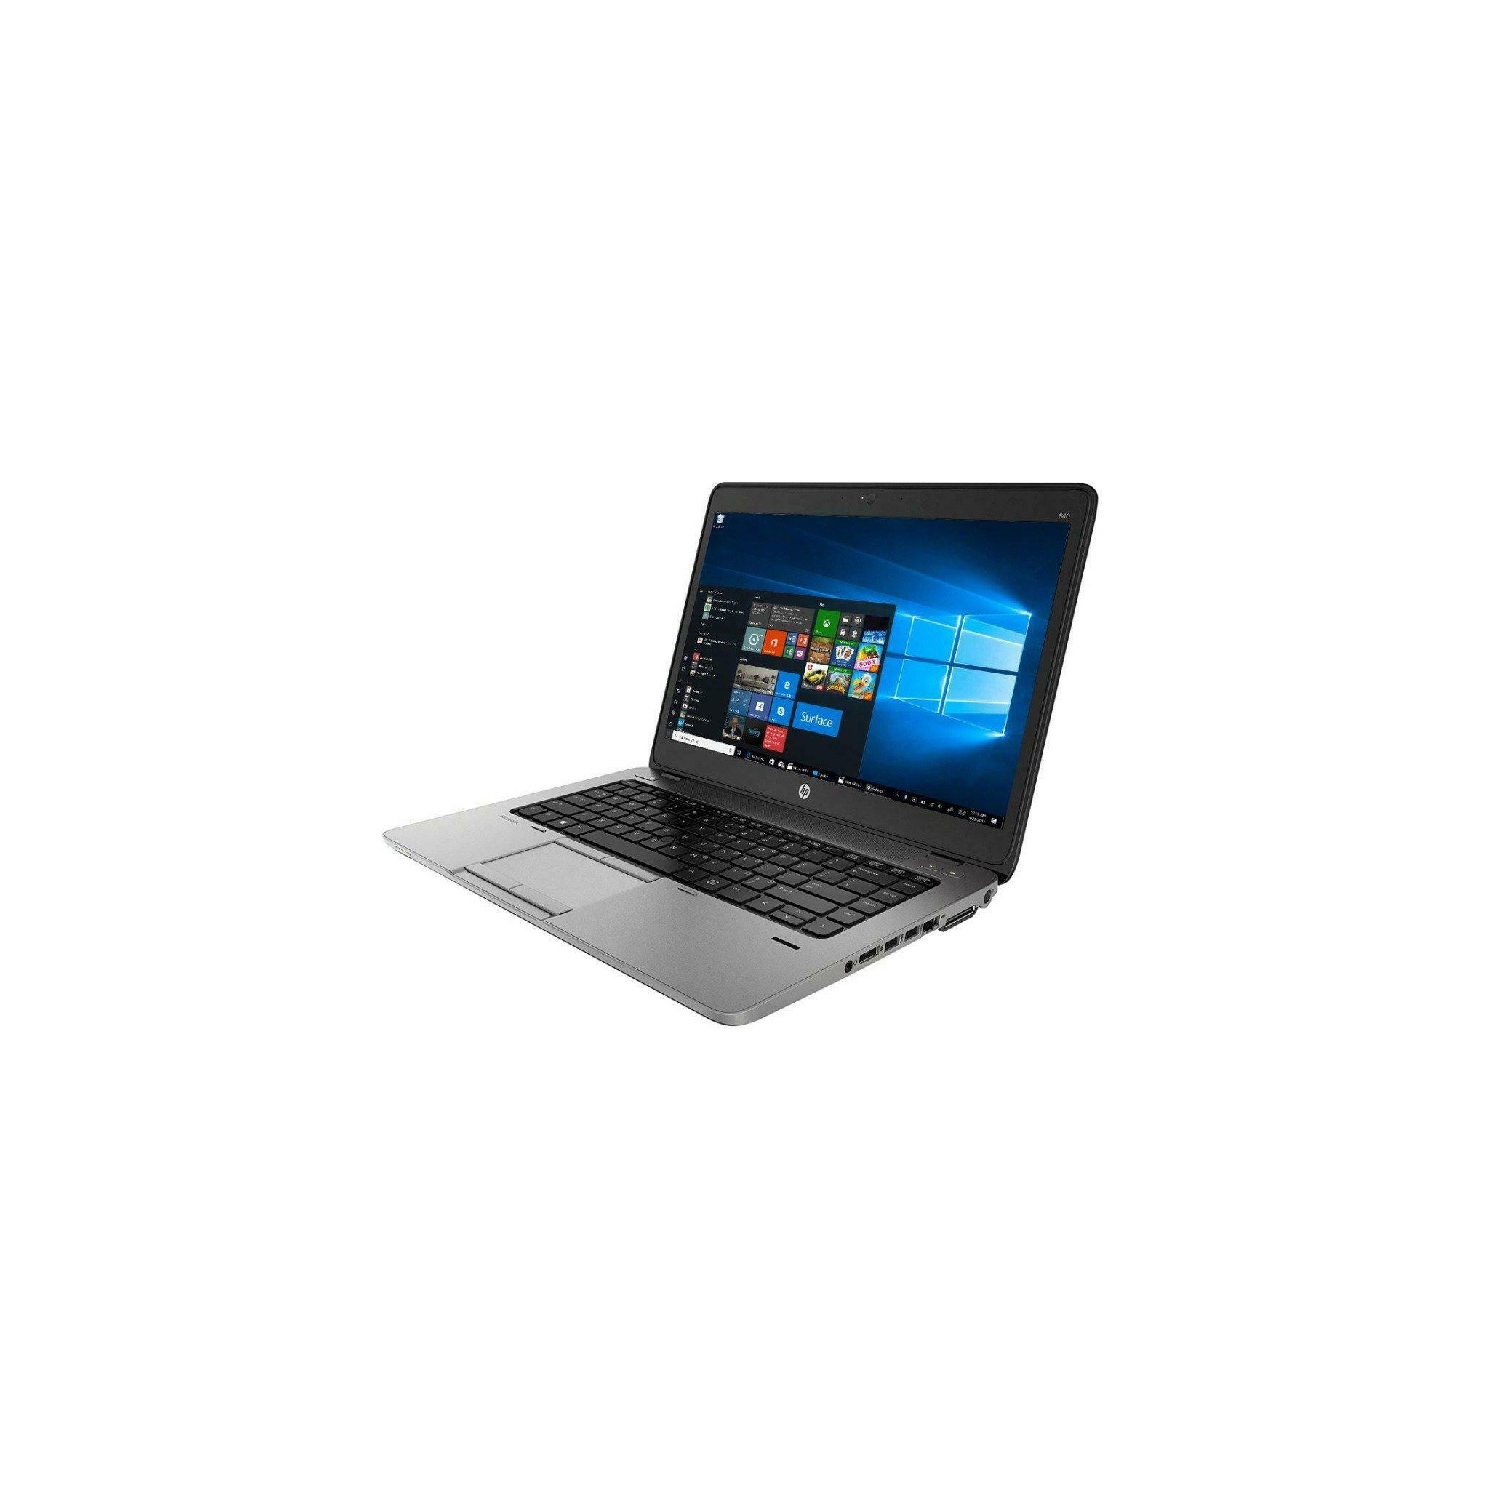 Refurbished (Good) - HP EliteBook 840 G1 i5 4300U 8 GB 500 GB HDD WIN10 Pro